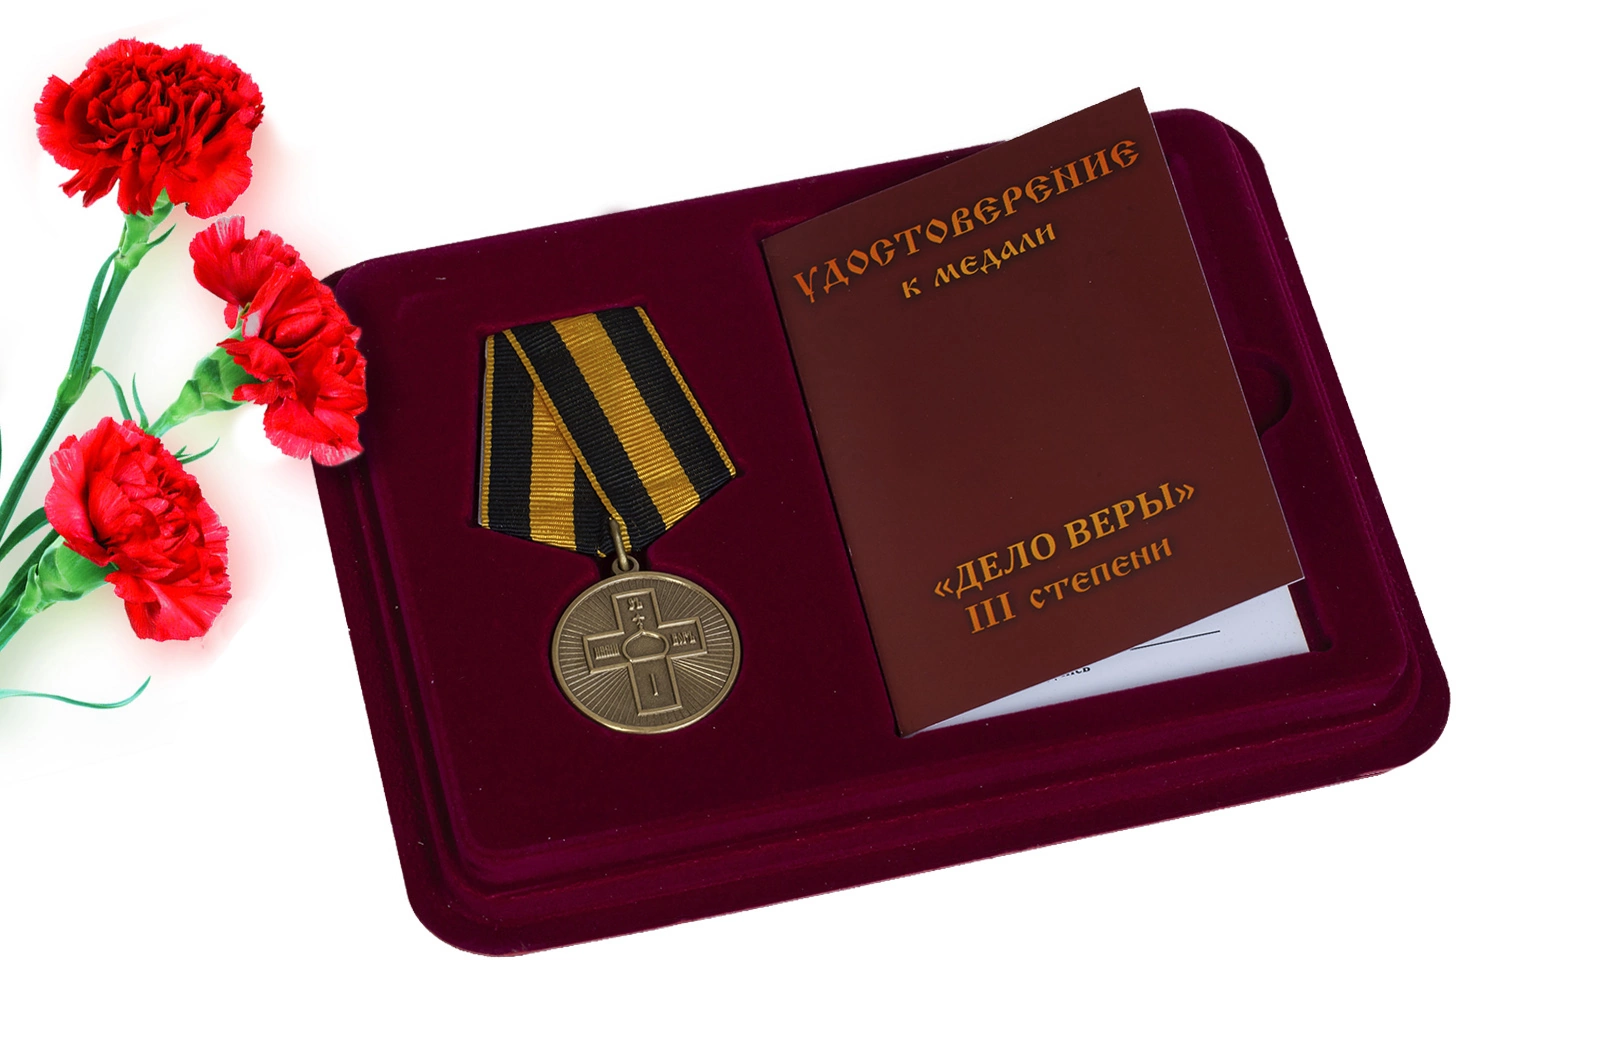 Православная медаль "Дело Веры" 3 степени в футляре с отделением под удостоверение